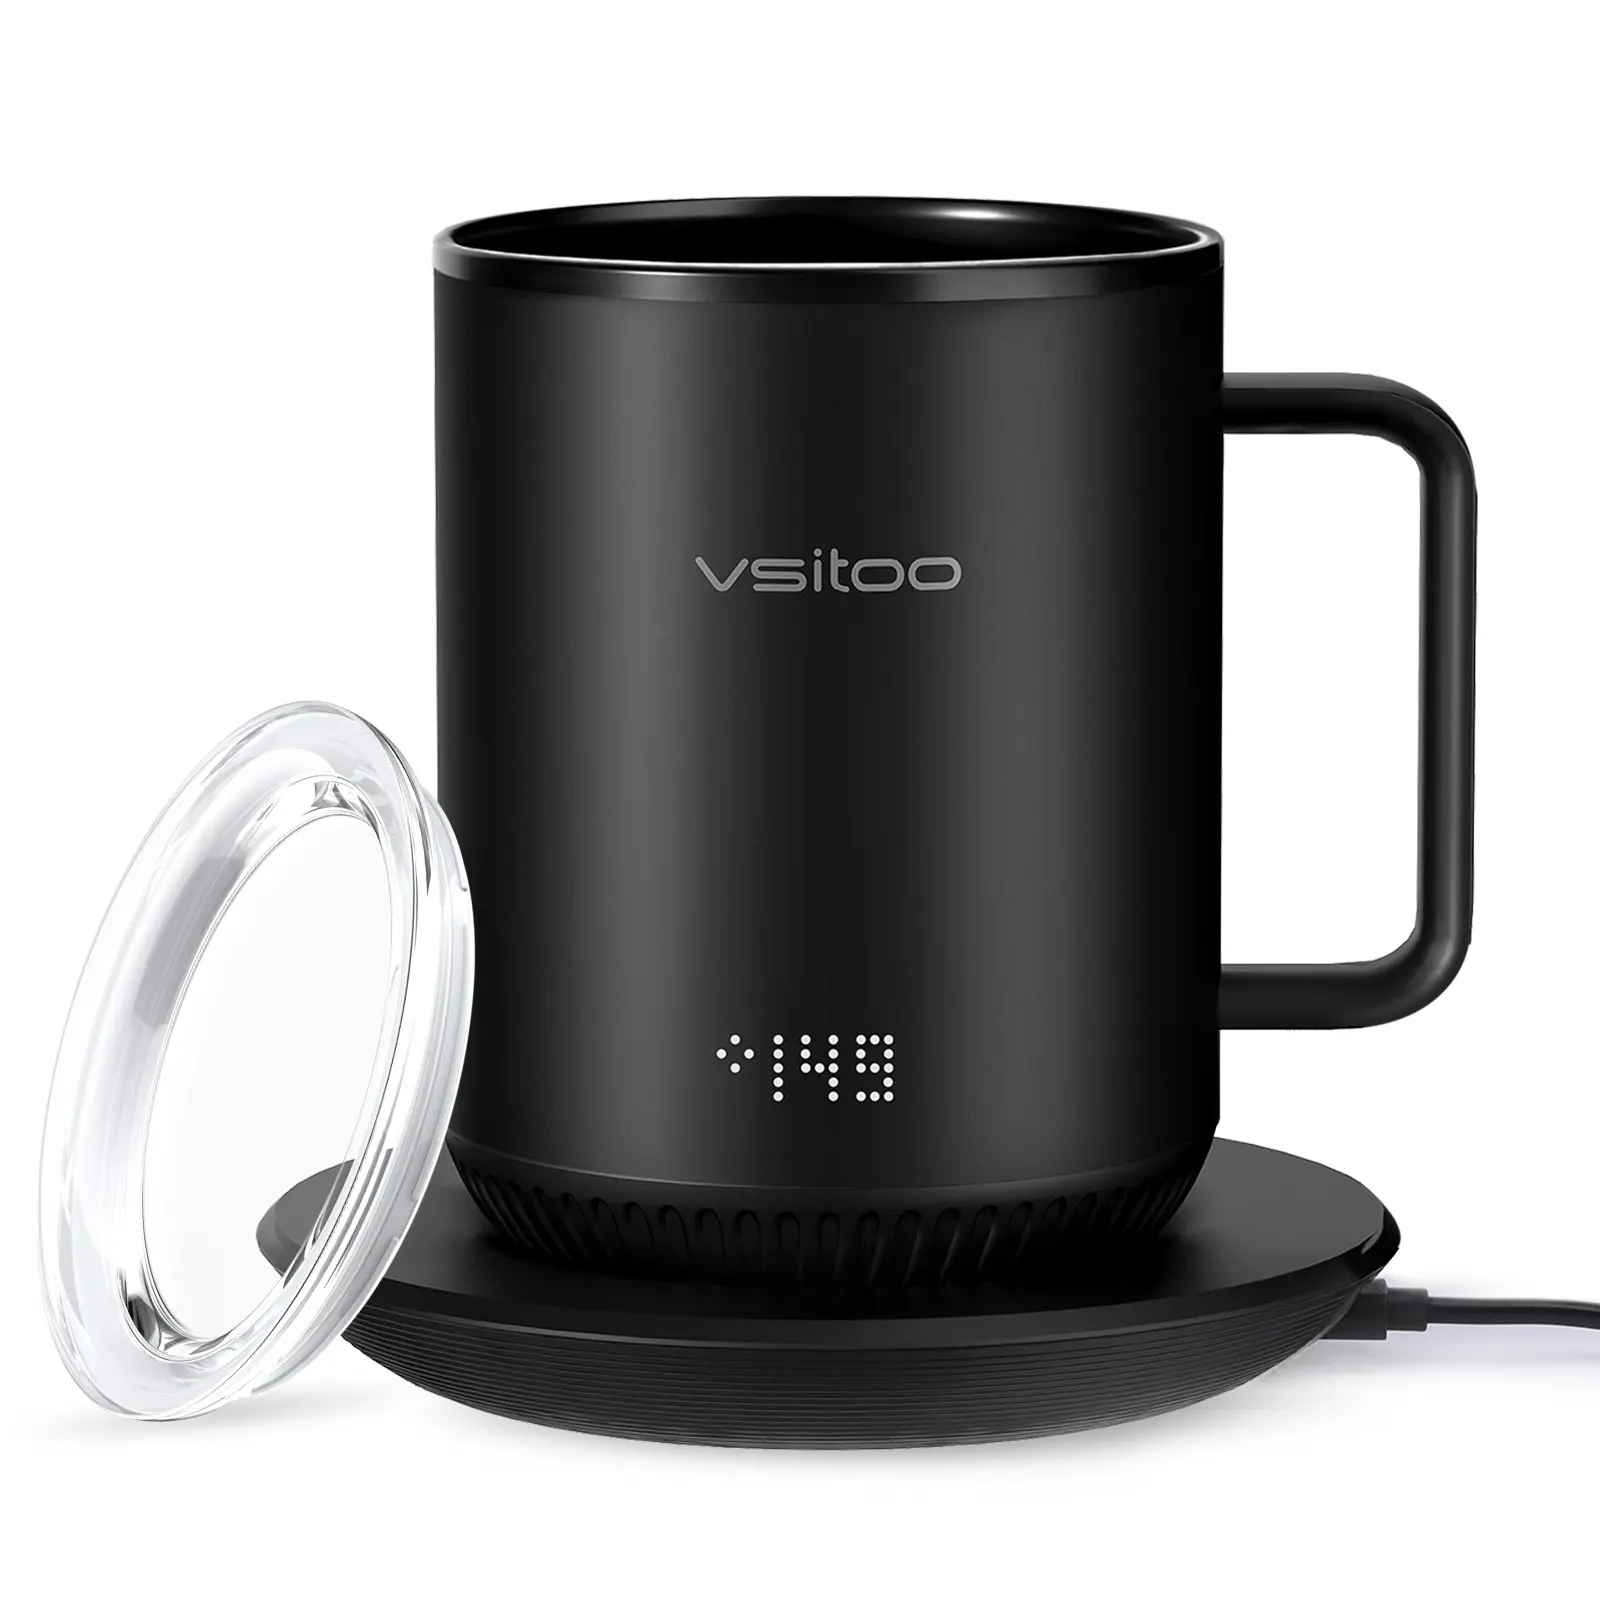 Vsitoo S3 sıcaklık kontrolü akıllı siyah kupa 2-4 saat pil ömrü, 10oz App kontrollü isıtmalı kahve kupa